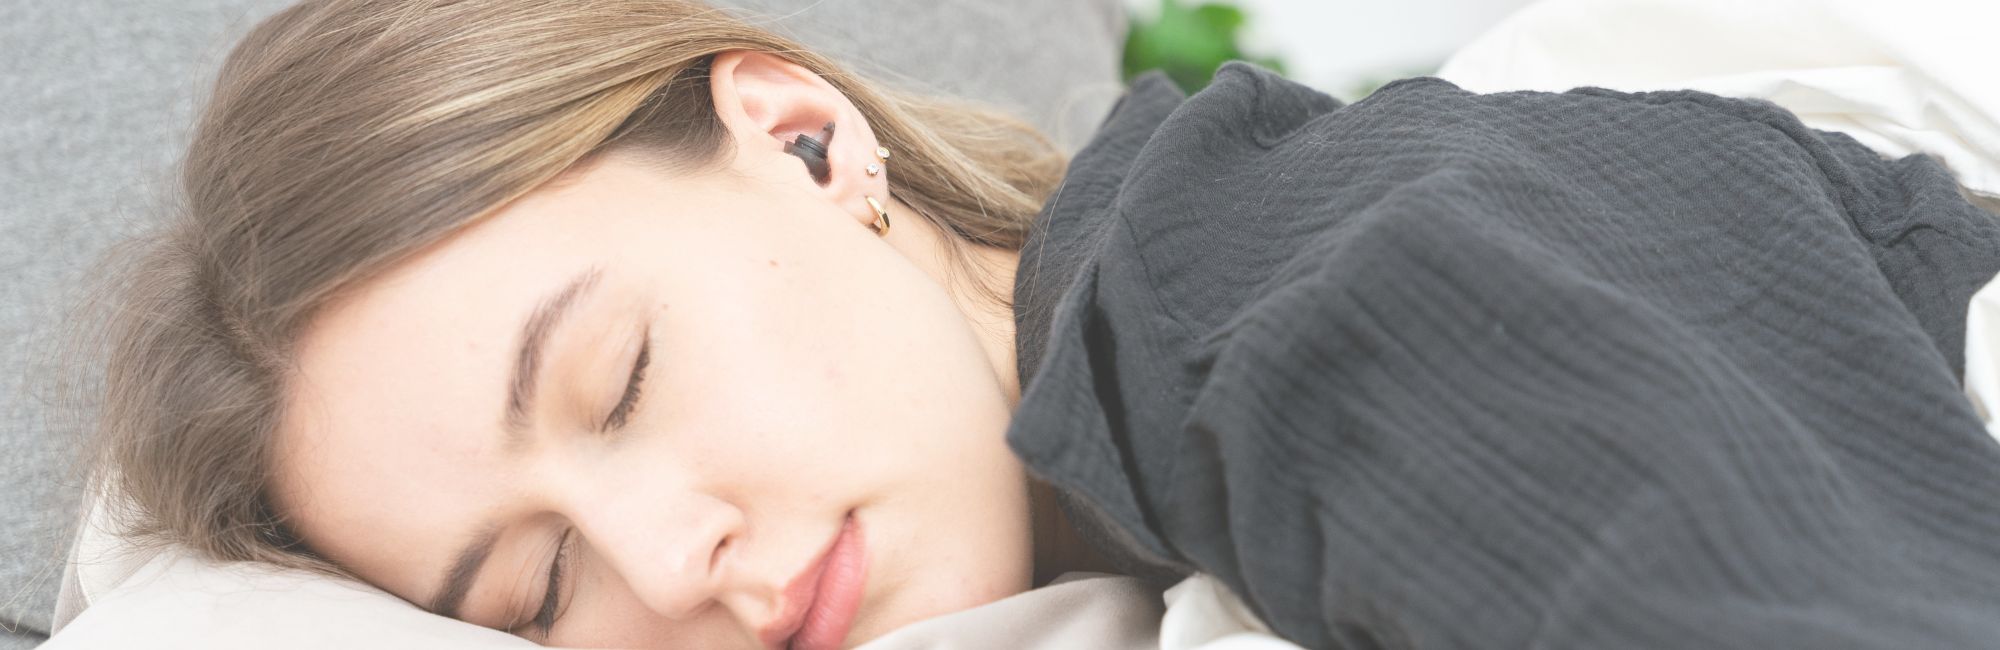 Schlafende Frau mit Schallwerk Sleep Gehörschutz